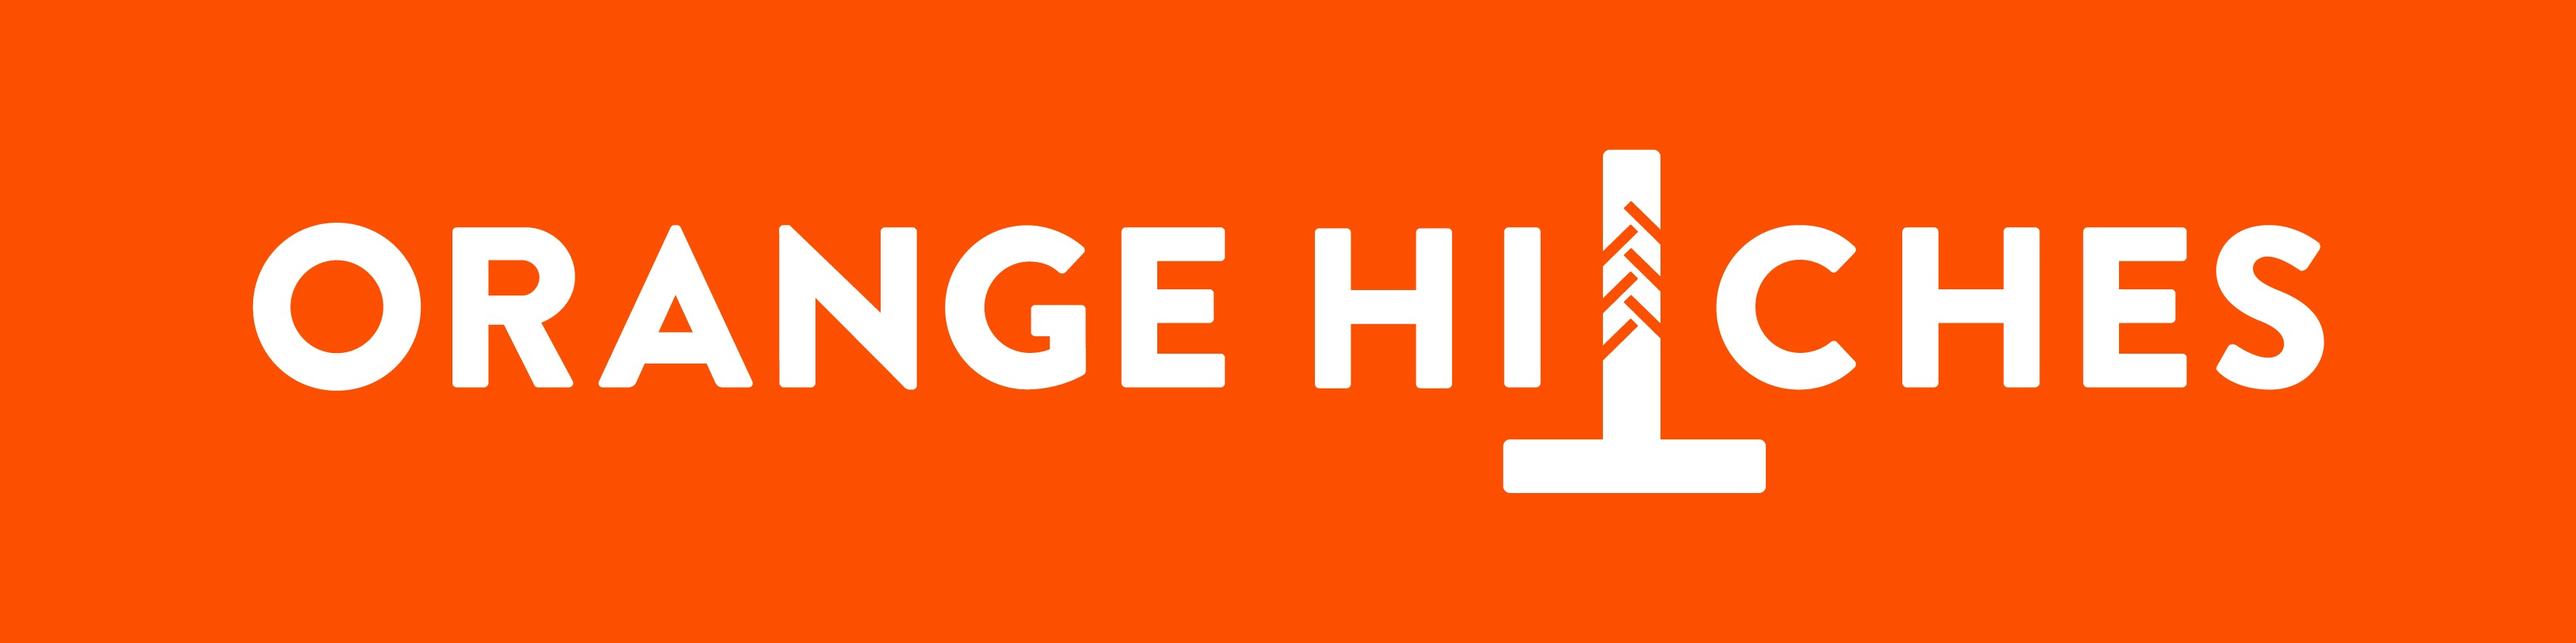 Orange Hitches NZ Limited